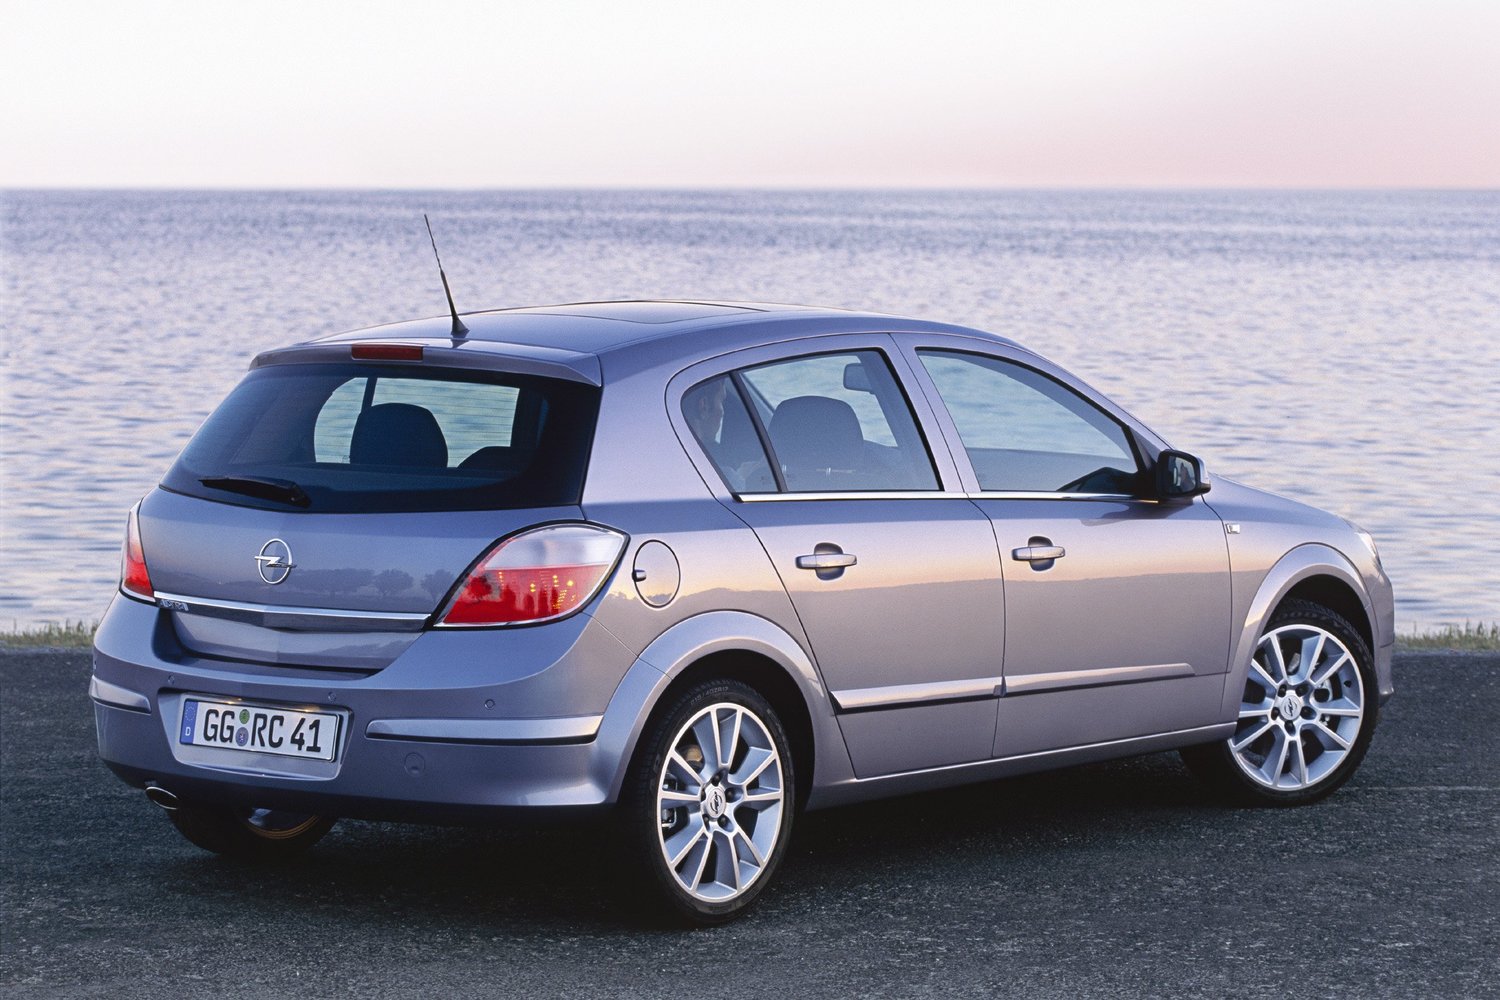 хэтчбек 5 дв. Opel Astra 2004 - 2006г выпуска модификация 1.2 AMT (90 л.с.)